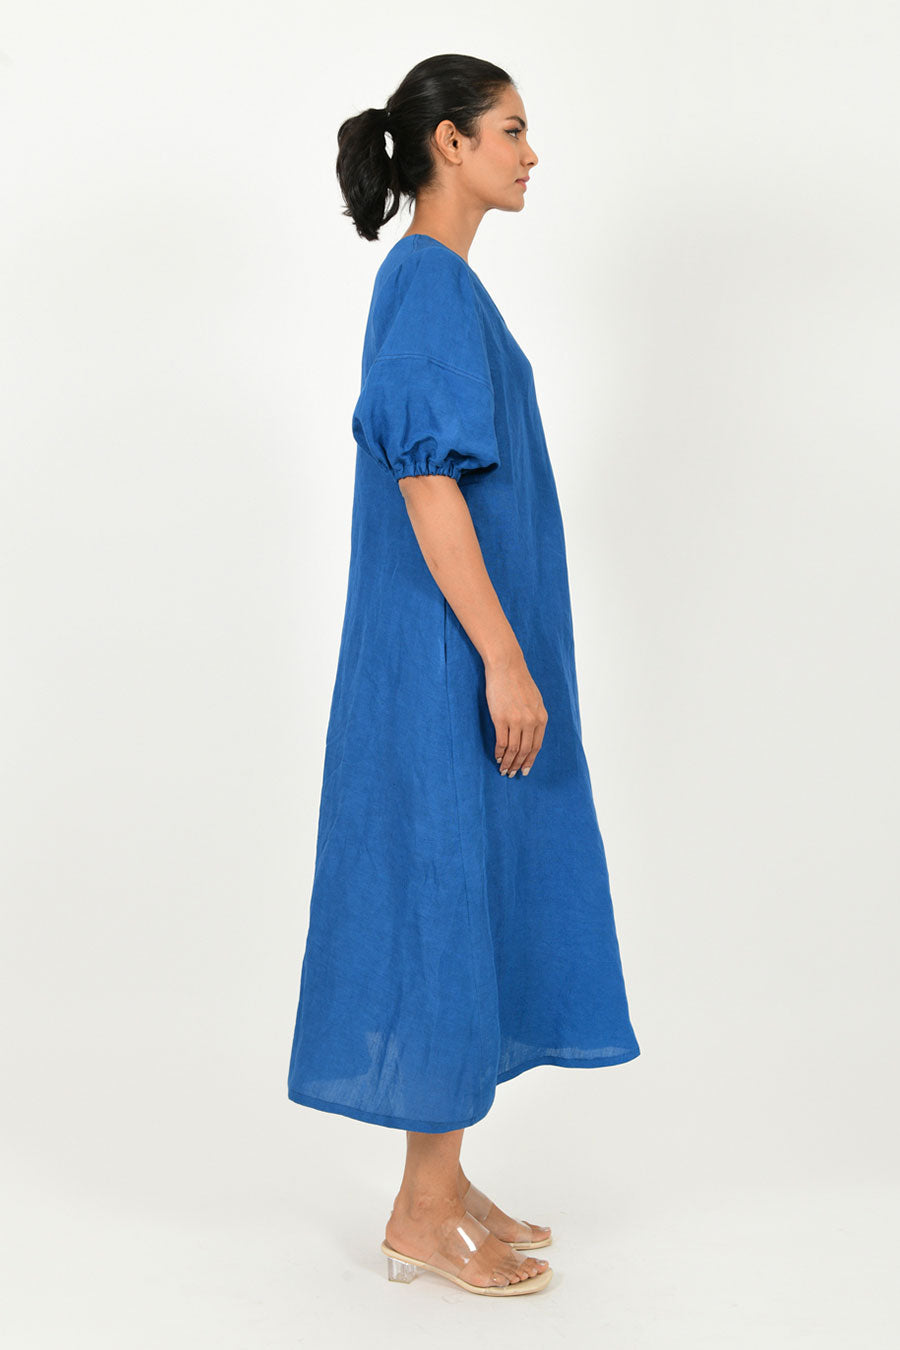 Classic Blue Linen Puff Sleeves Dress